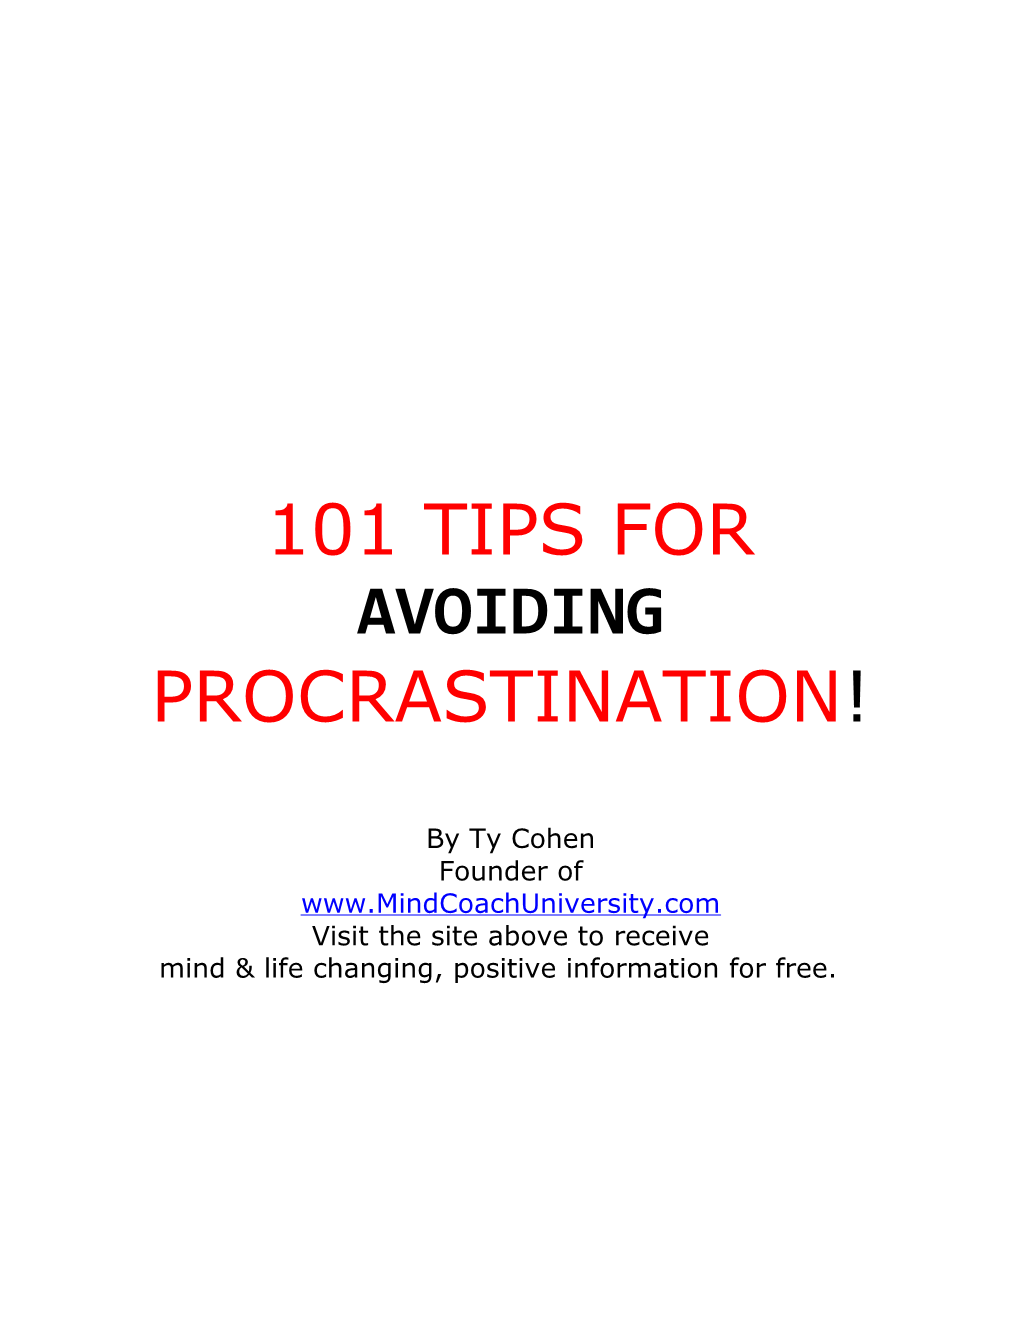 101 Tips for Avoiding Procrastination